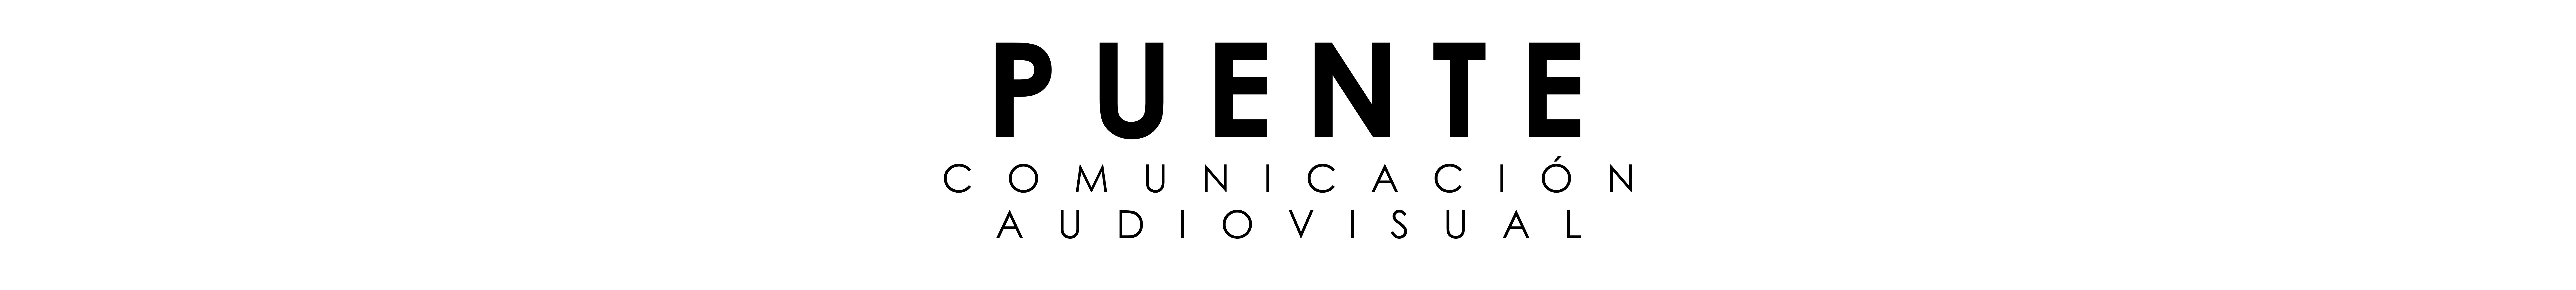 Puente Audiovisuals profilbanner